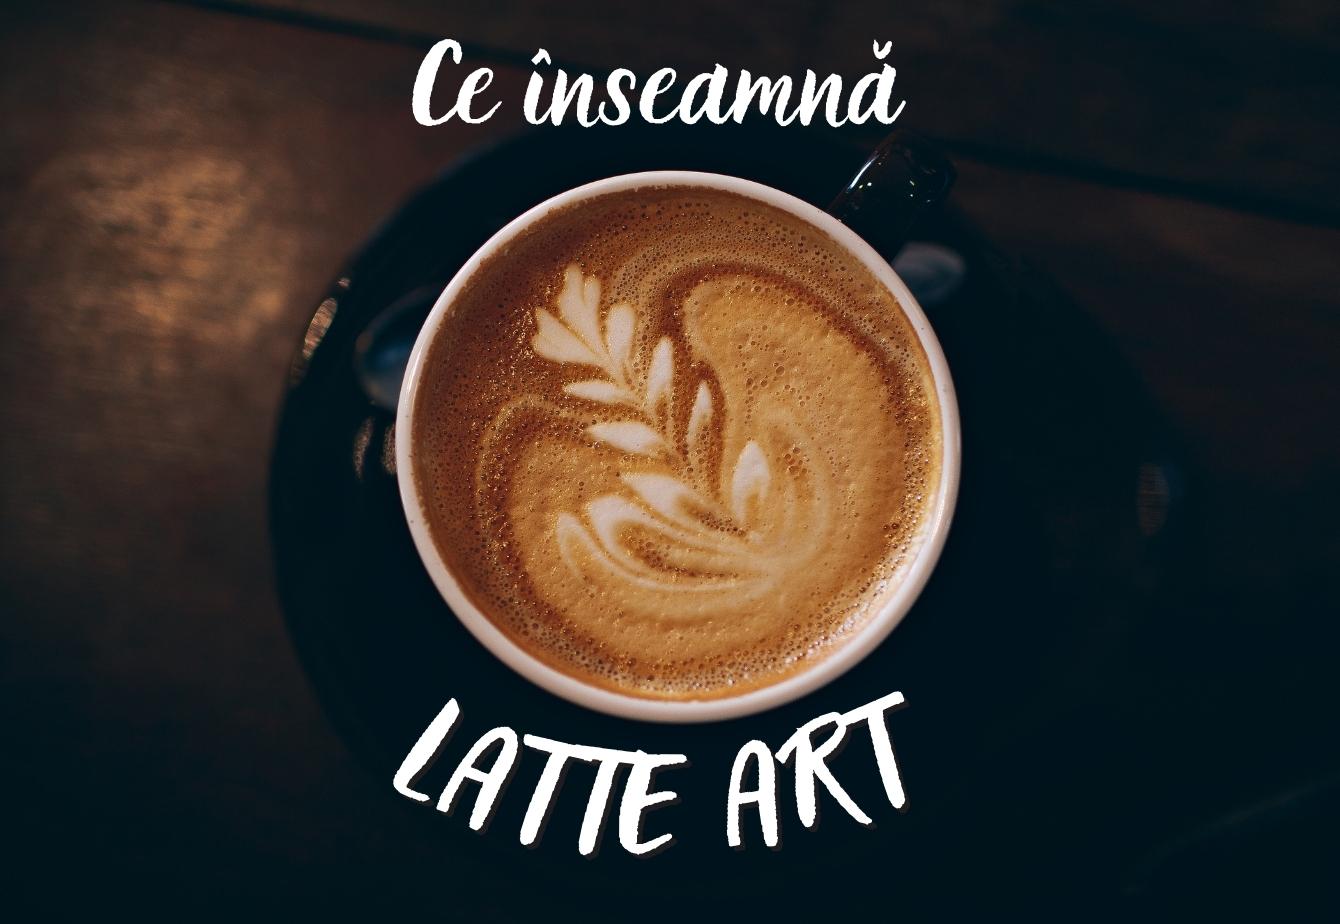 Ce este Latte Art?